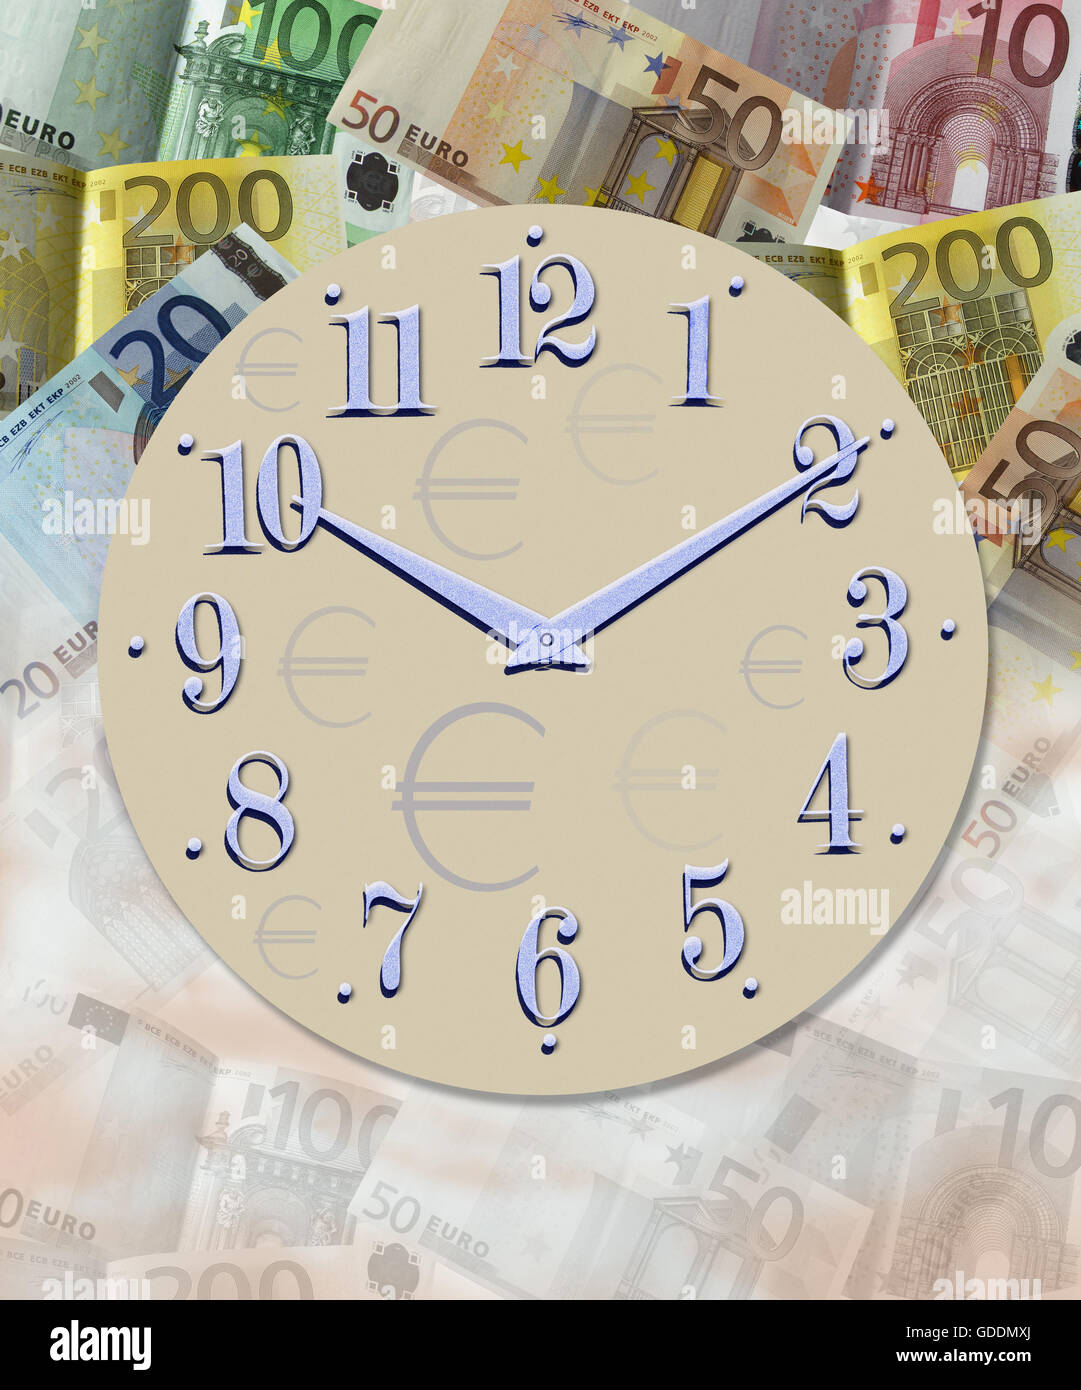 Le temps est argent, image symbolique Banque D'Images